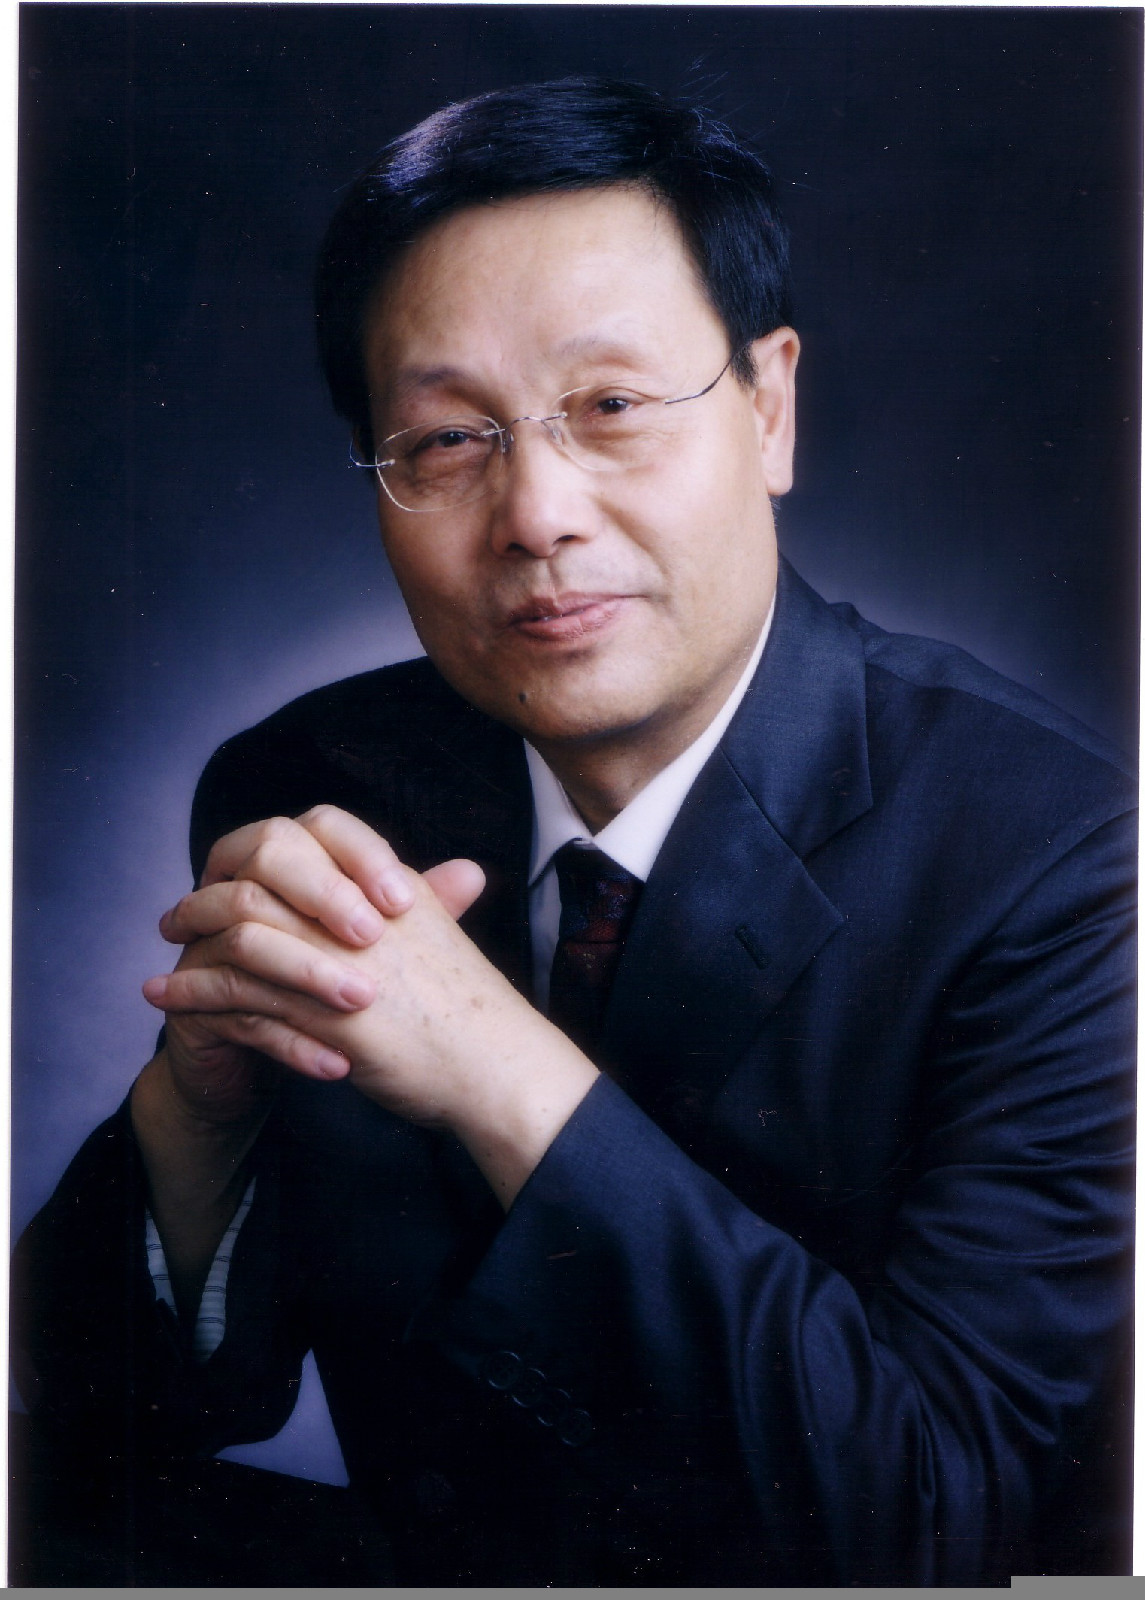 張玉奎(中國科學院院士、分析化學家)